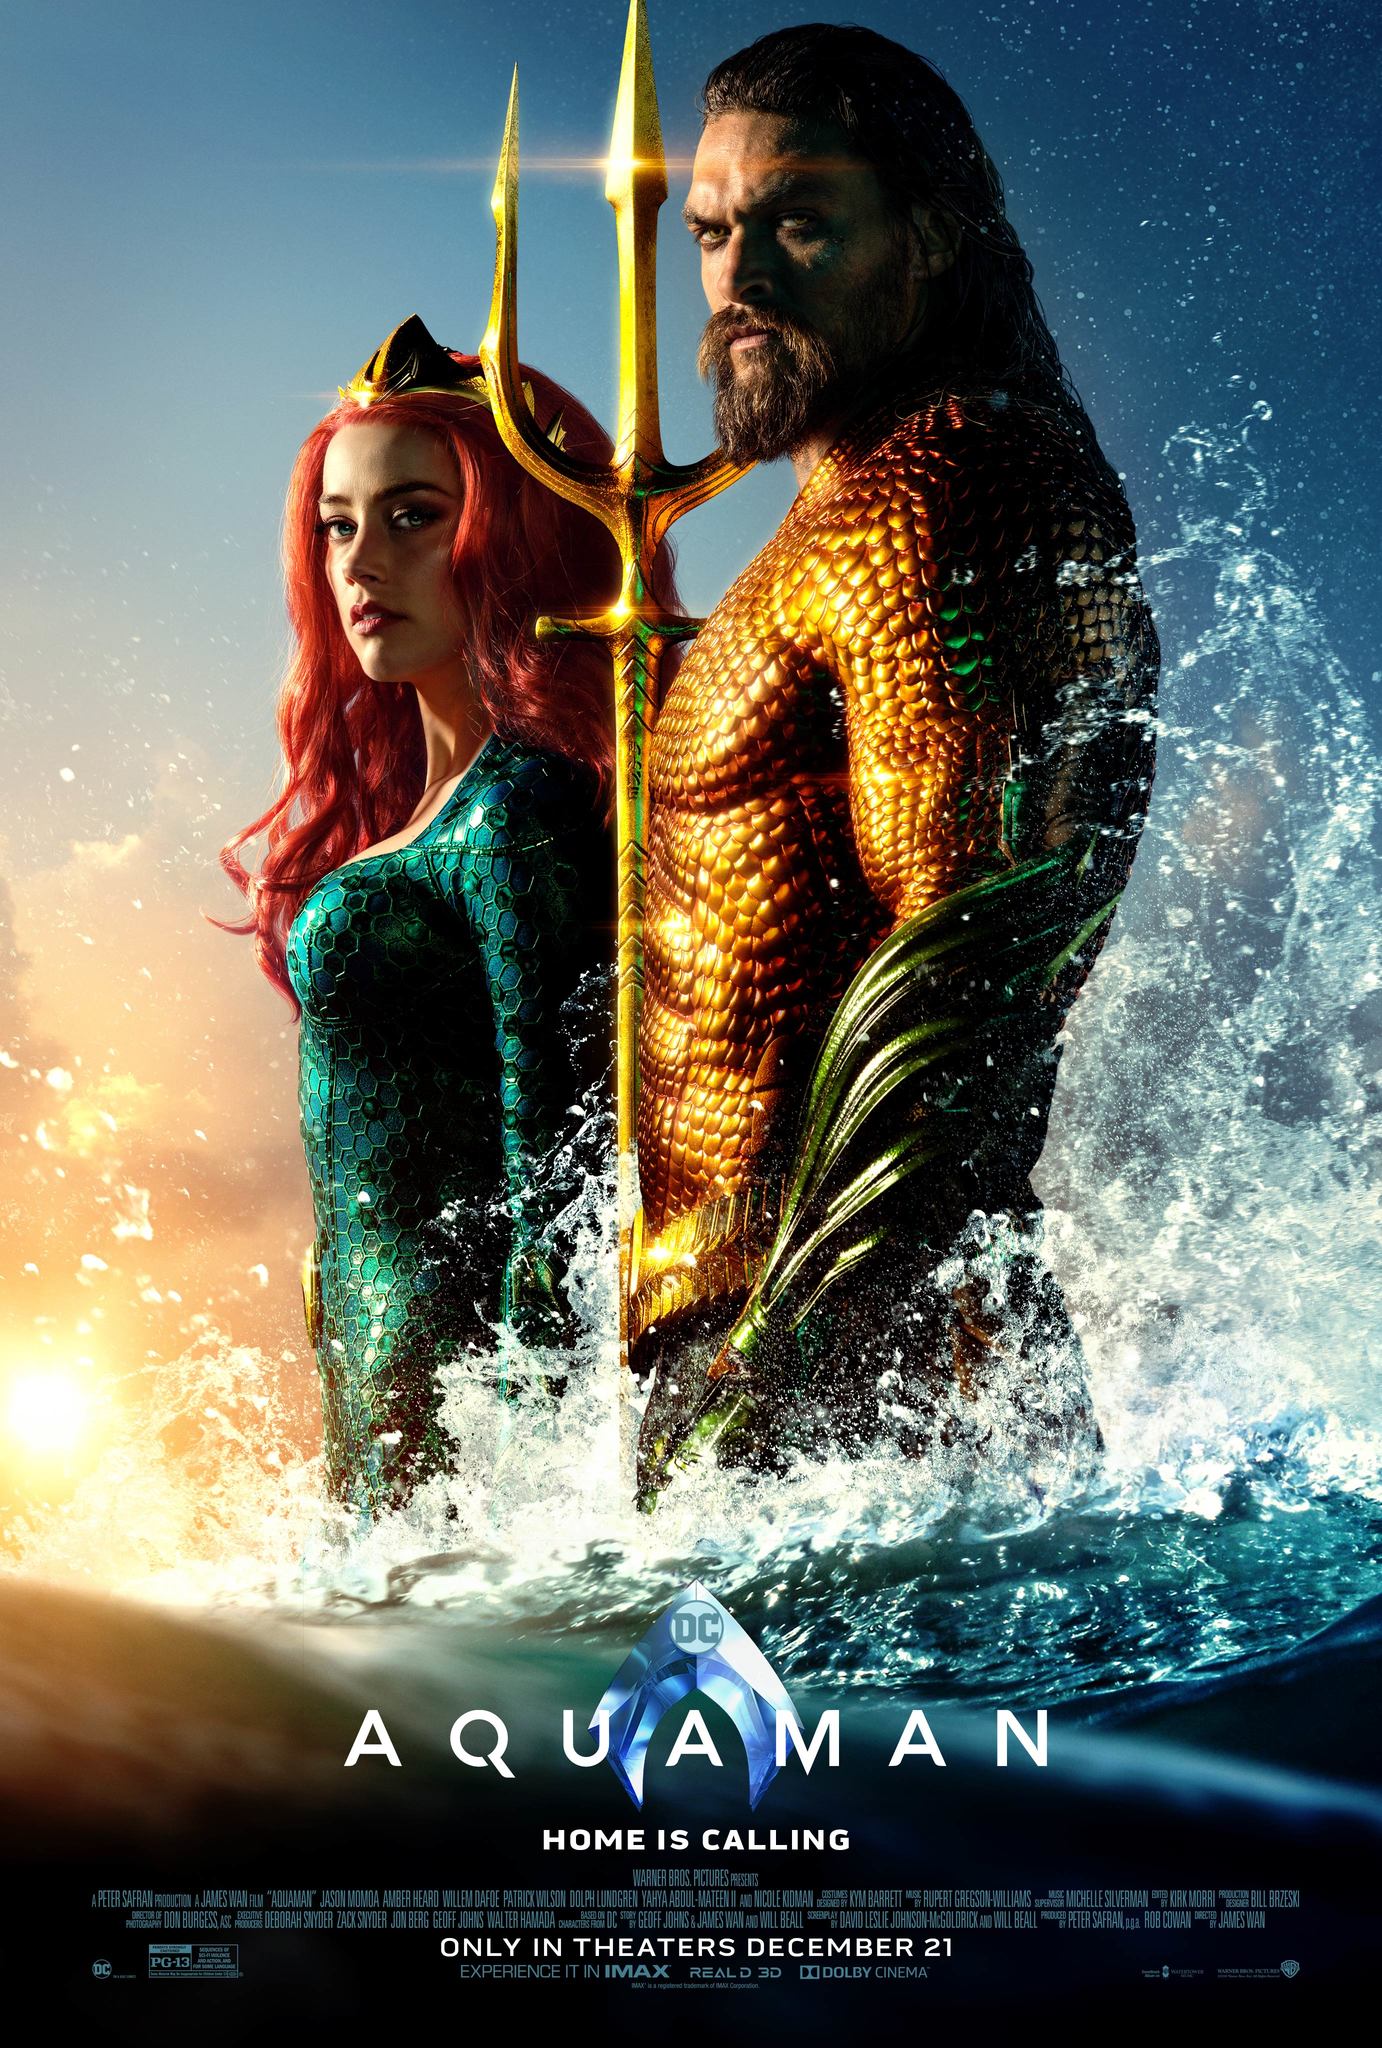 دانلود دوبله فارسی فیلم سینمایی آکوامن Aquaman 2018 BluRay